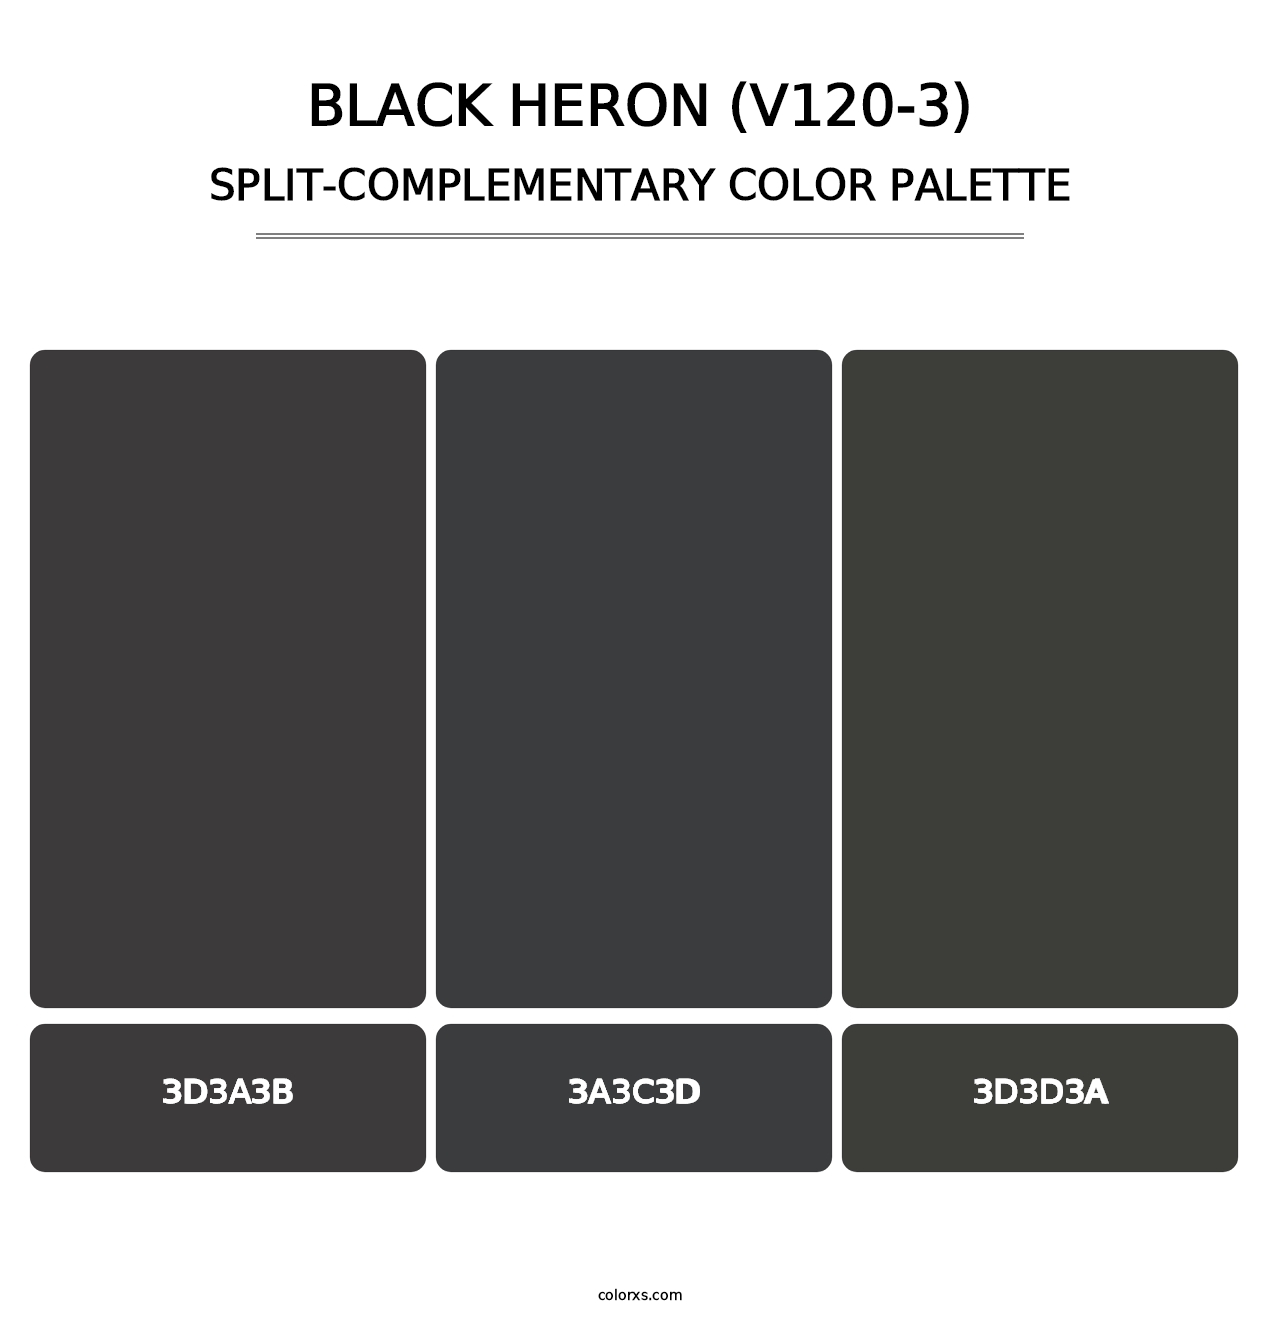 Black Heron (V120-3) - Split-Complementary Color Palette